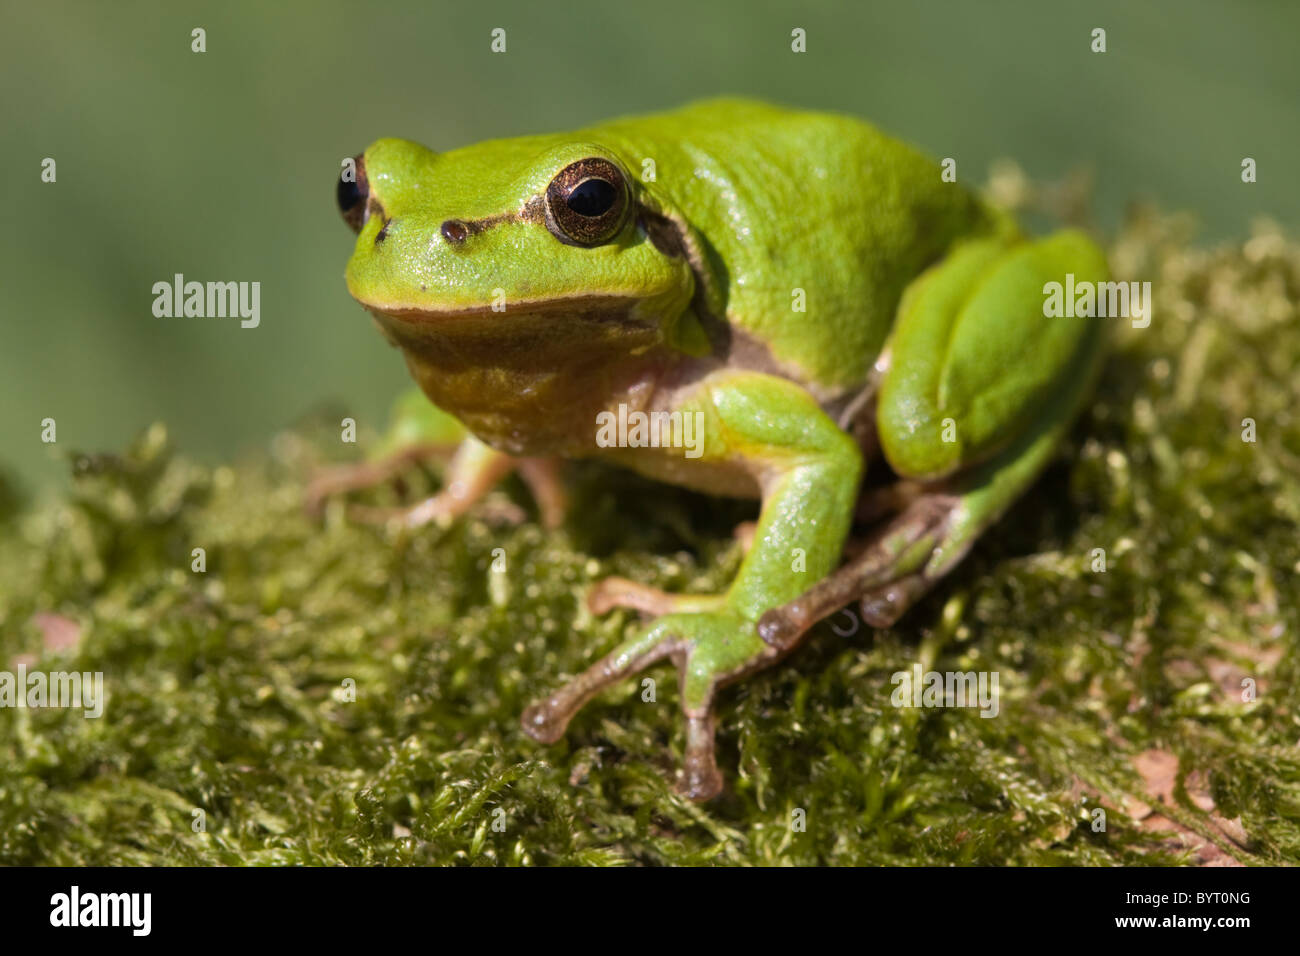 European tree frog (Hyla arborea) Stock Photo